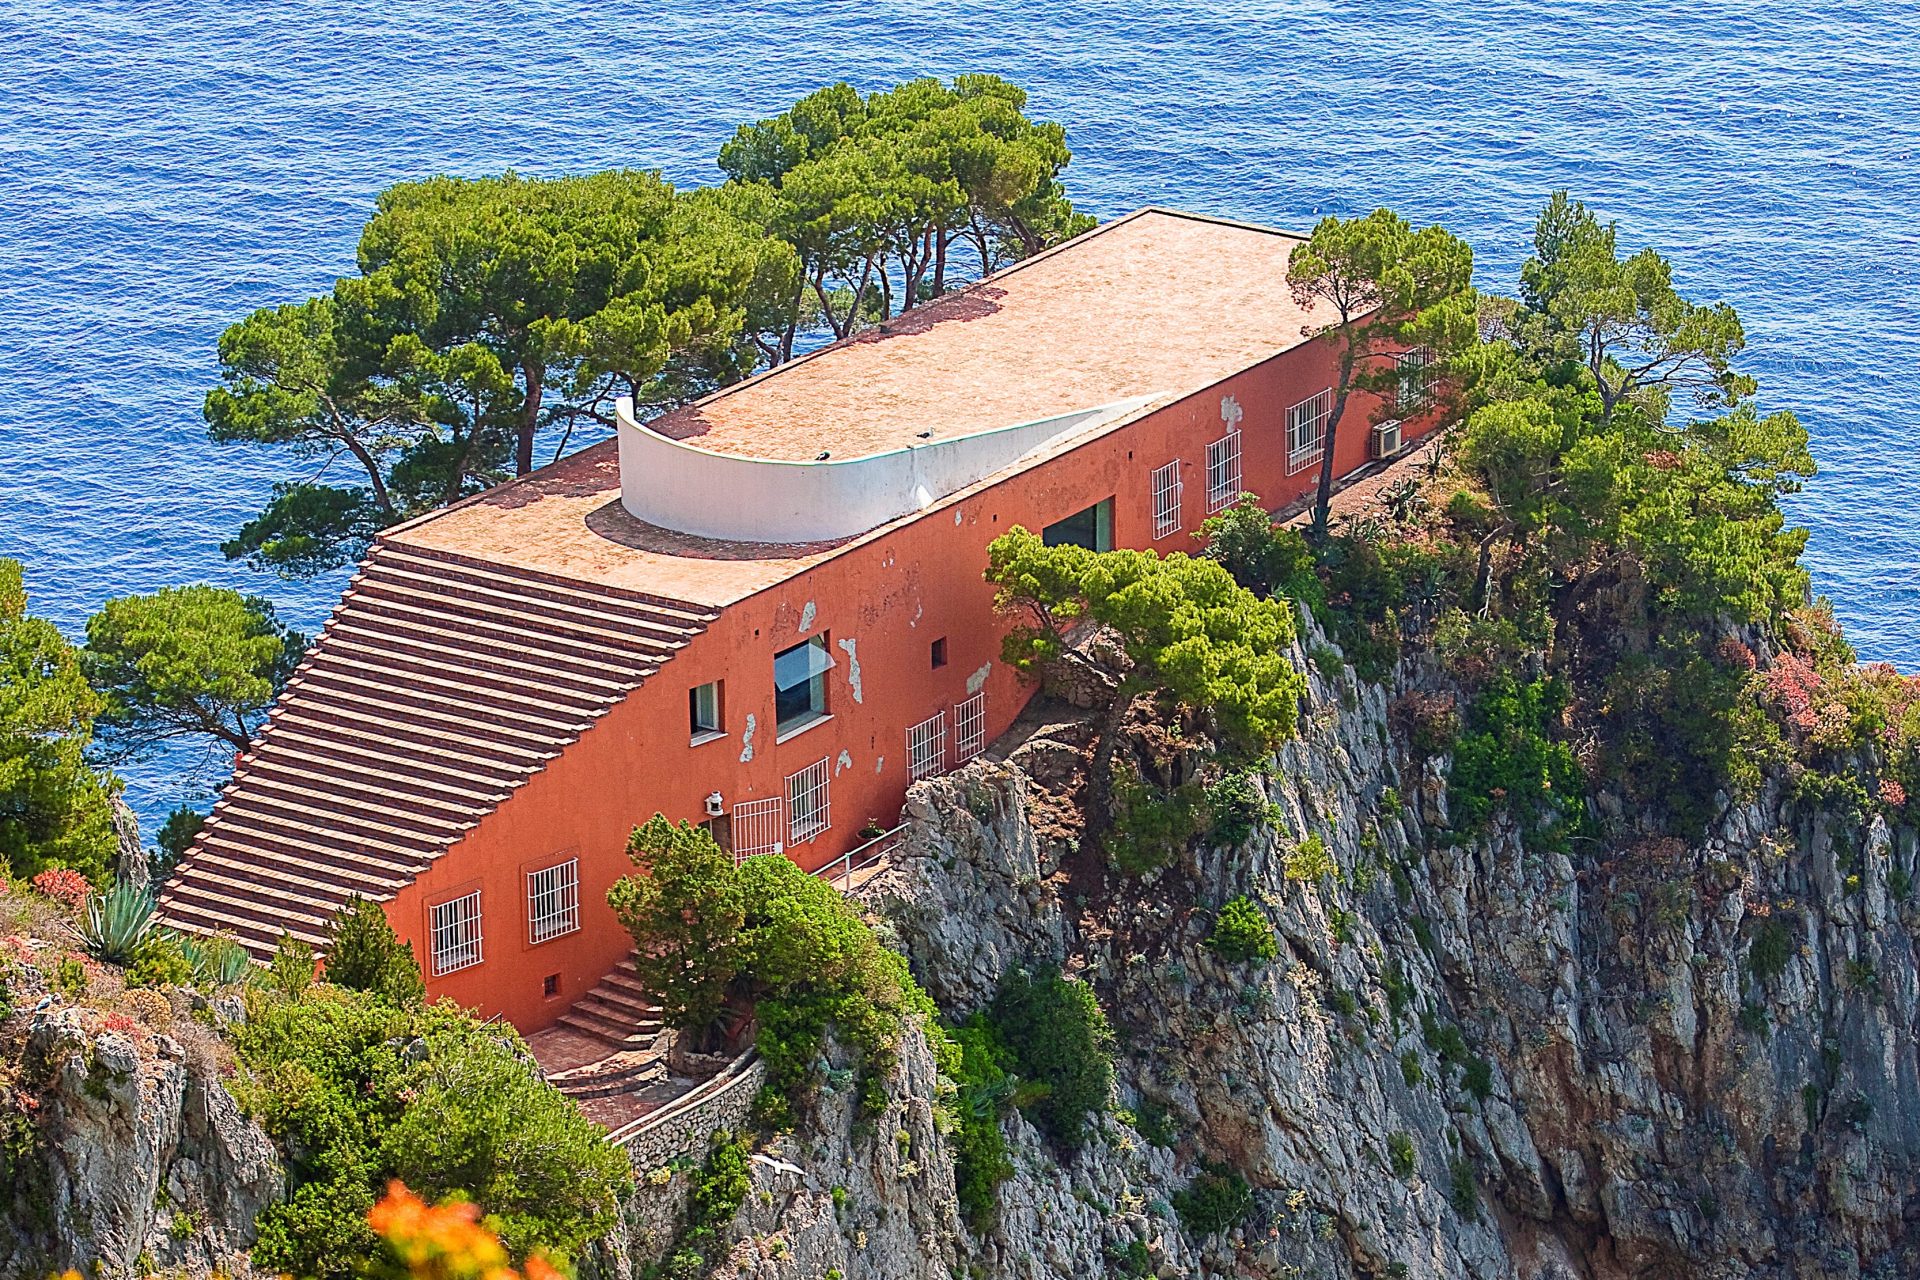 Die Treppen der Villa Malaparte von Adalberto Libera auf Capri